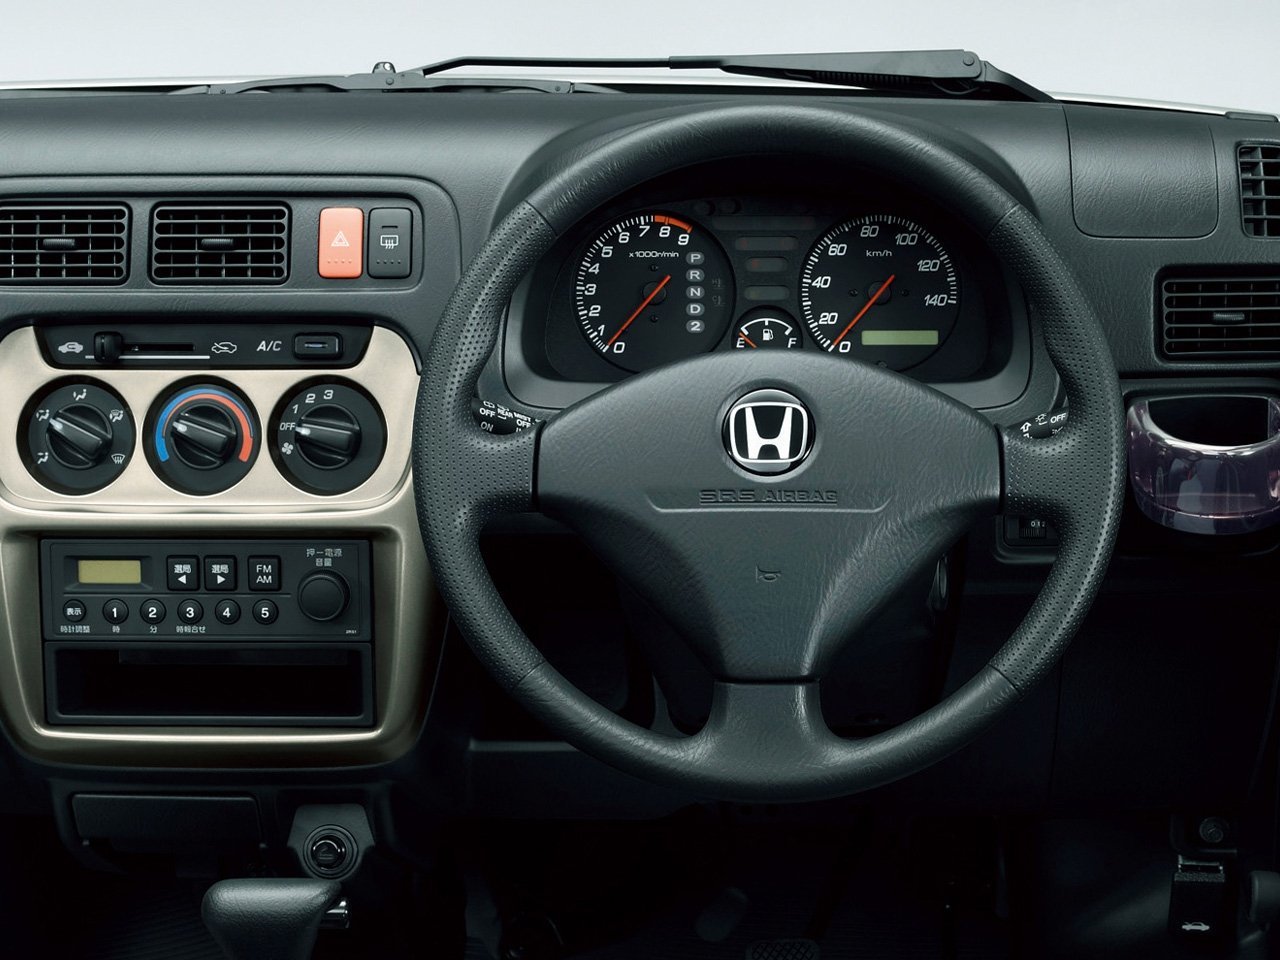 минивэн Honda Acty 1999 - 2016г выпуска модификация 0.7 MT (46 л.с.)